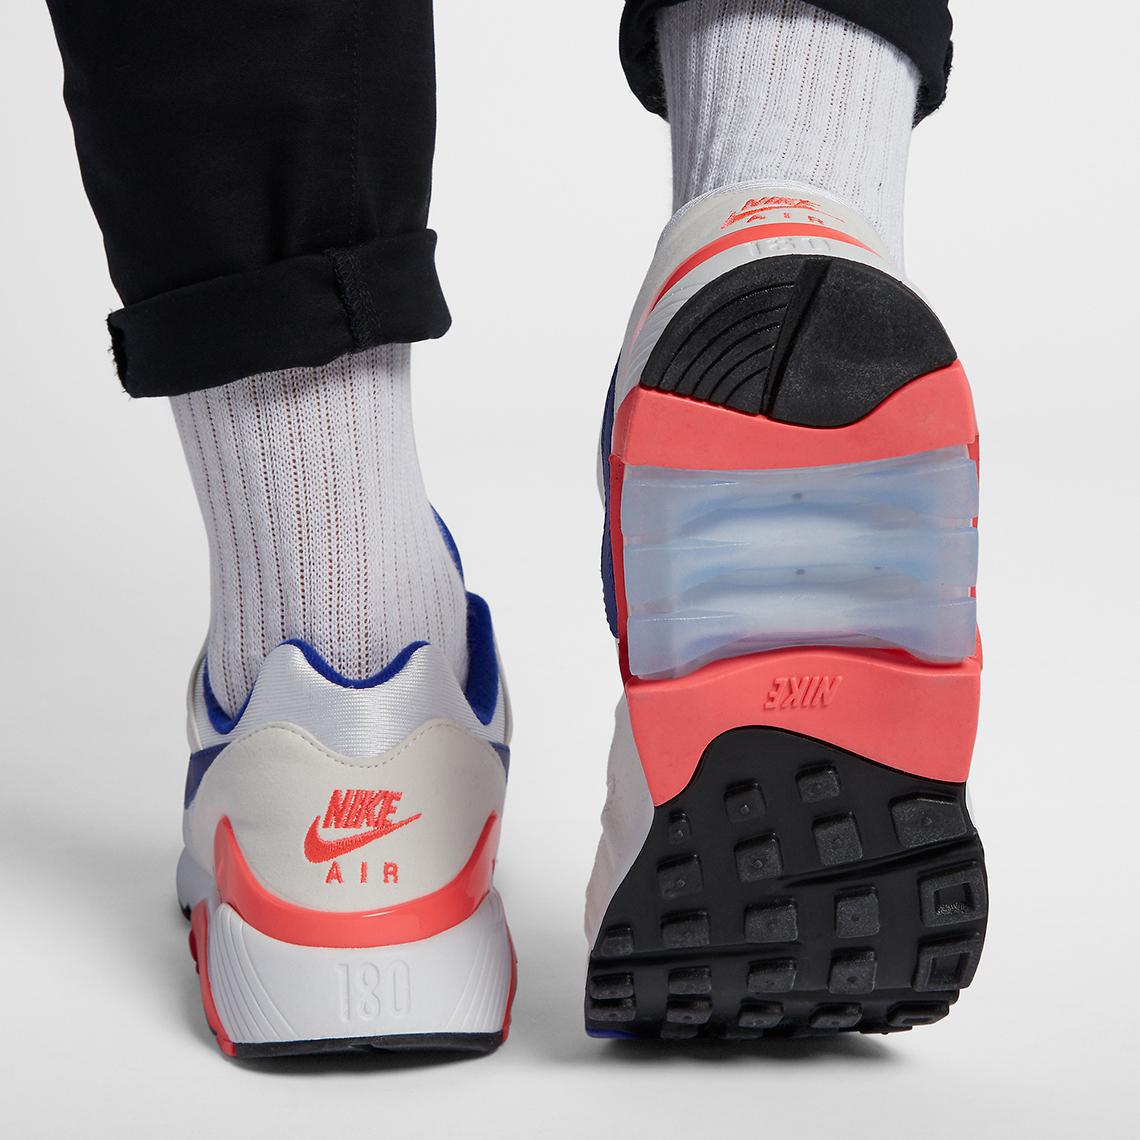 Premier regard sur la Nike Air 180 "Ultramarine" avec de grosses bulles